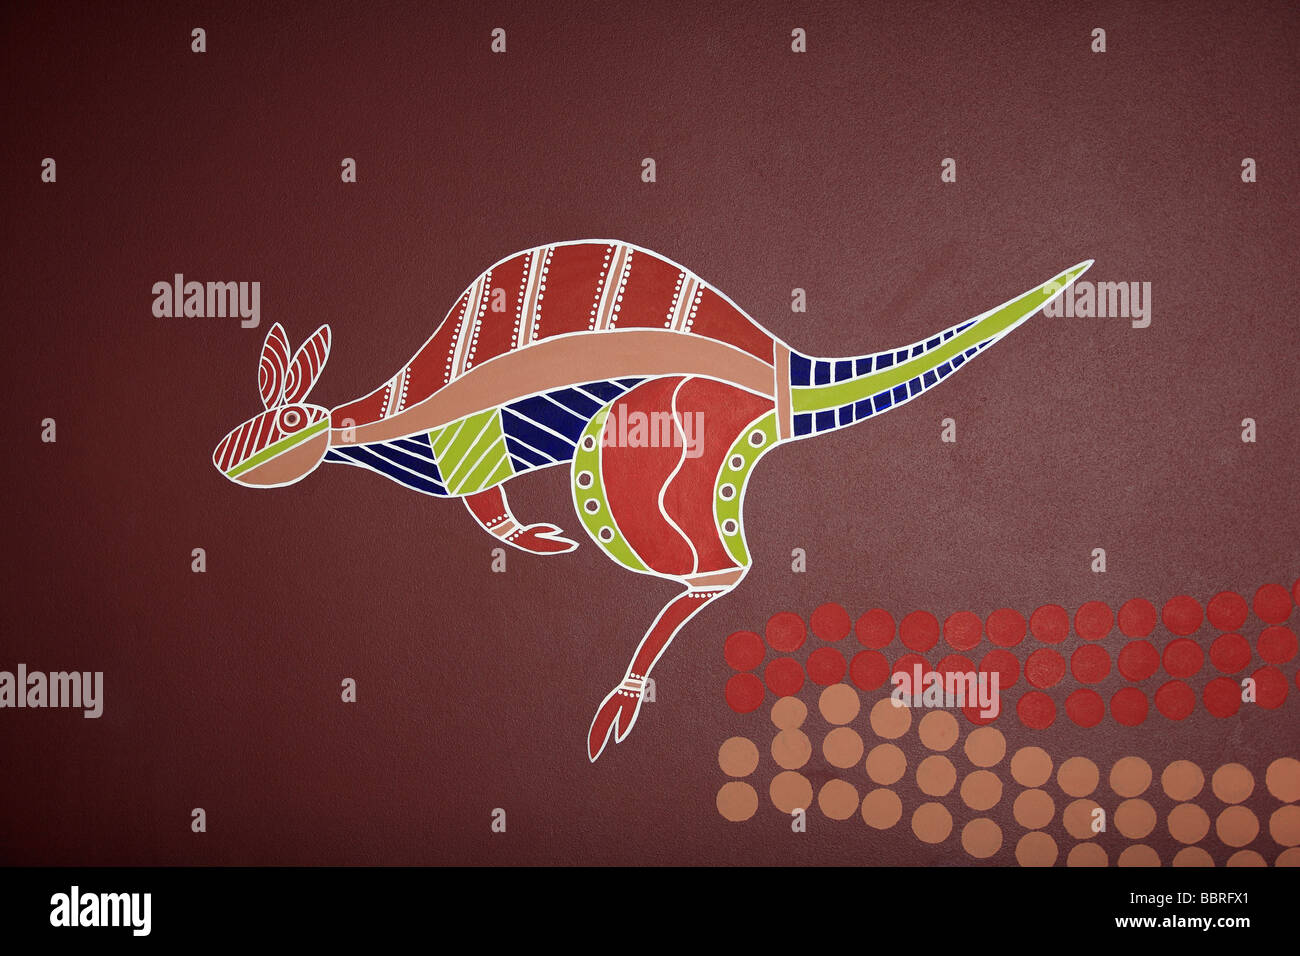 Illustrations de style autochtone un kangourou peint sur un mur Banque D'Images